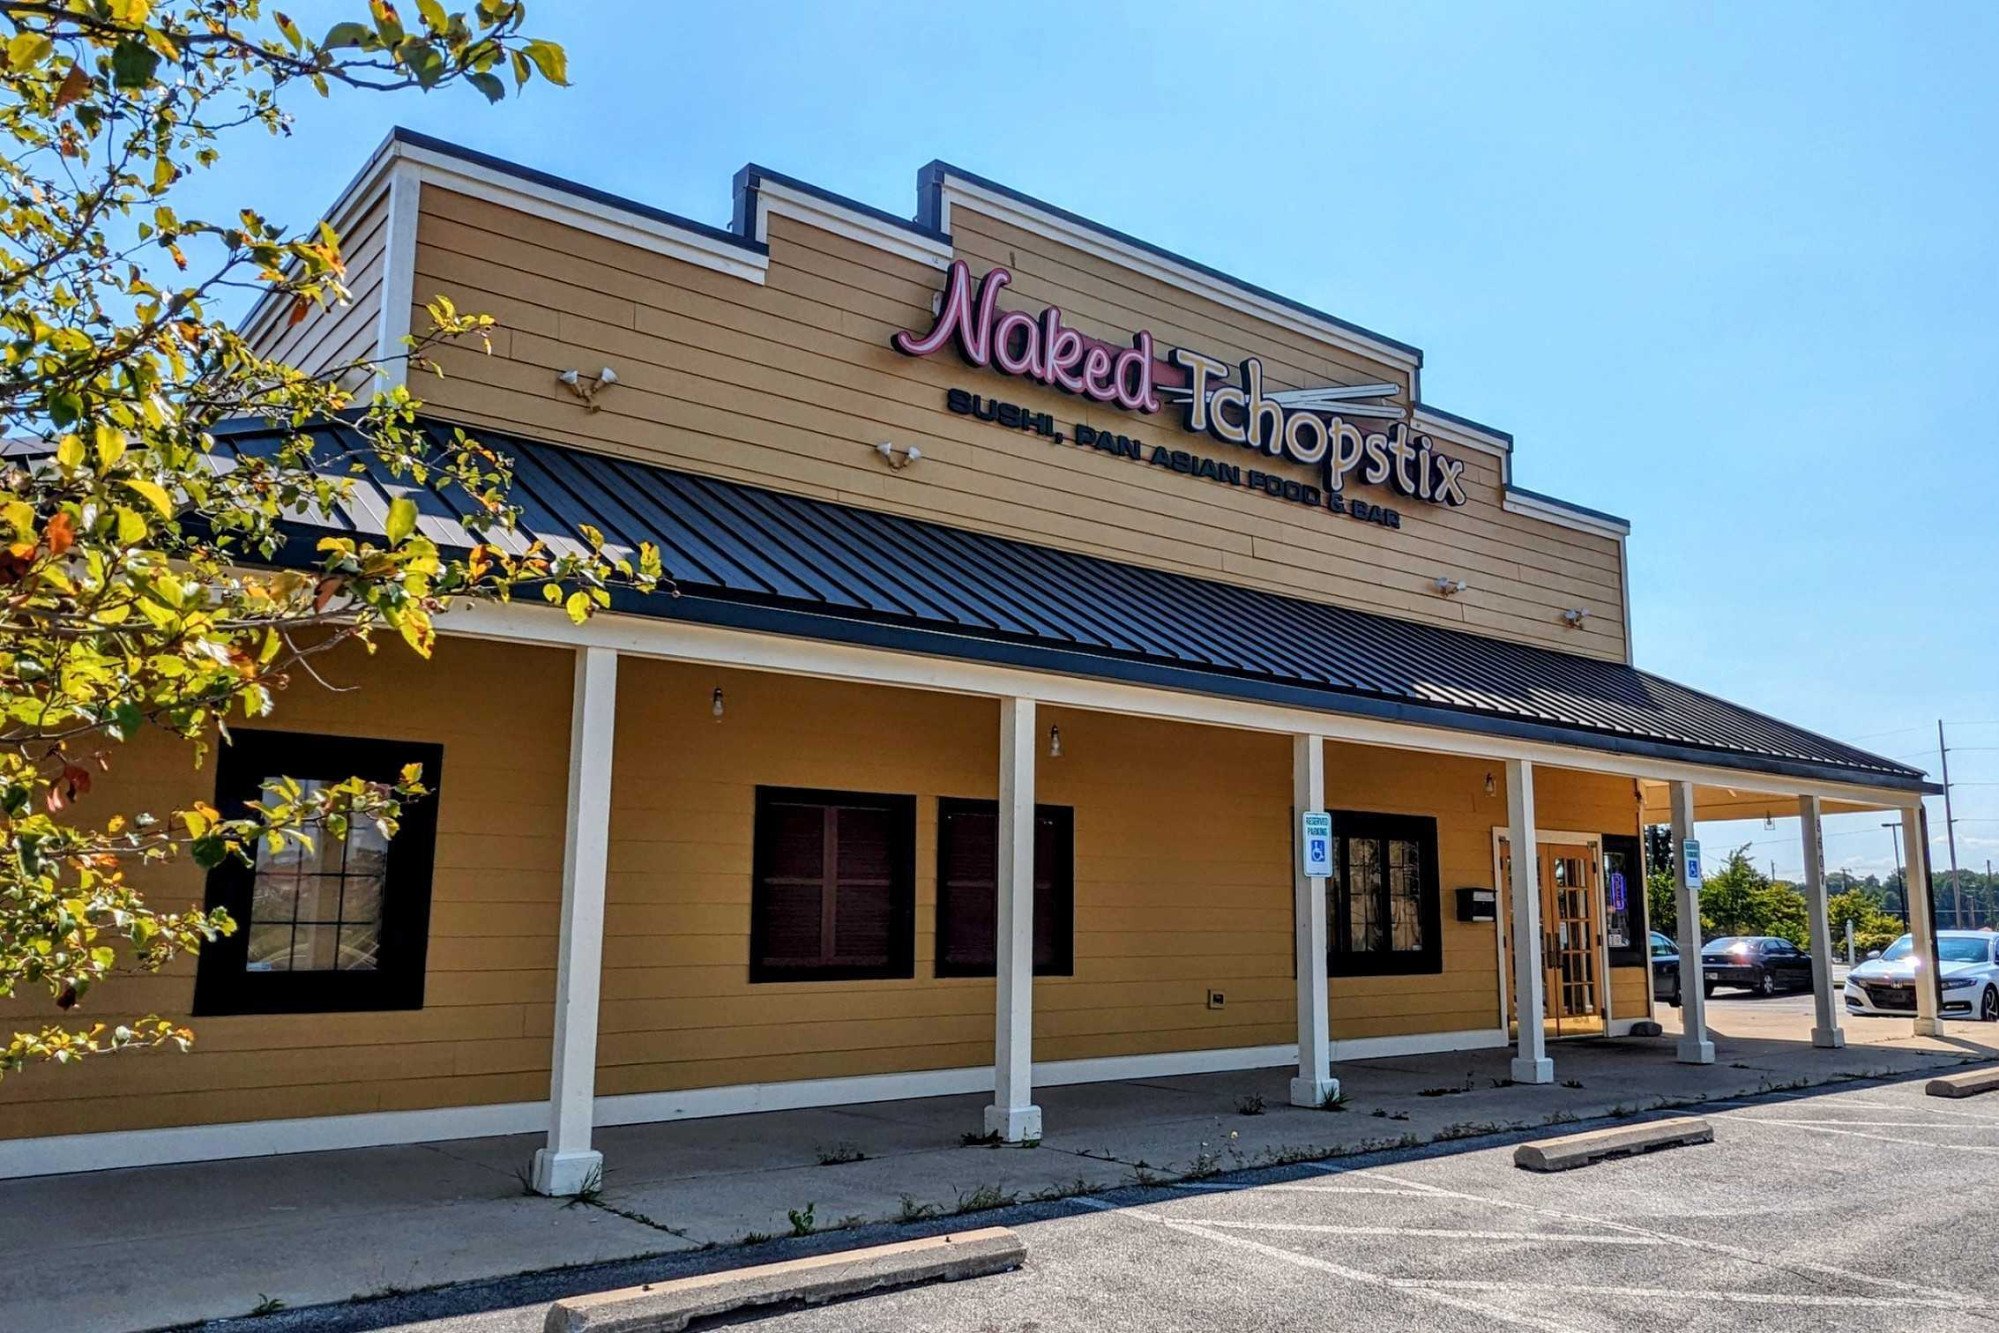 Sturges Property Group - Naked Tchopstix Restaurant, 8607 US 24 W, Fort Wayne, IN 46804